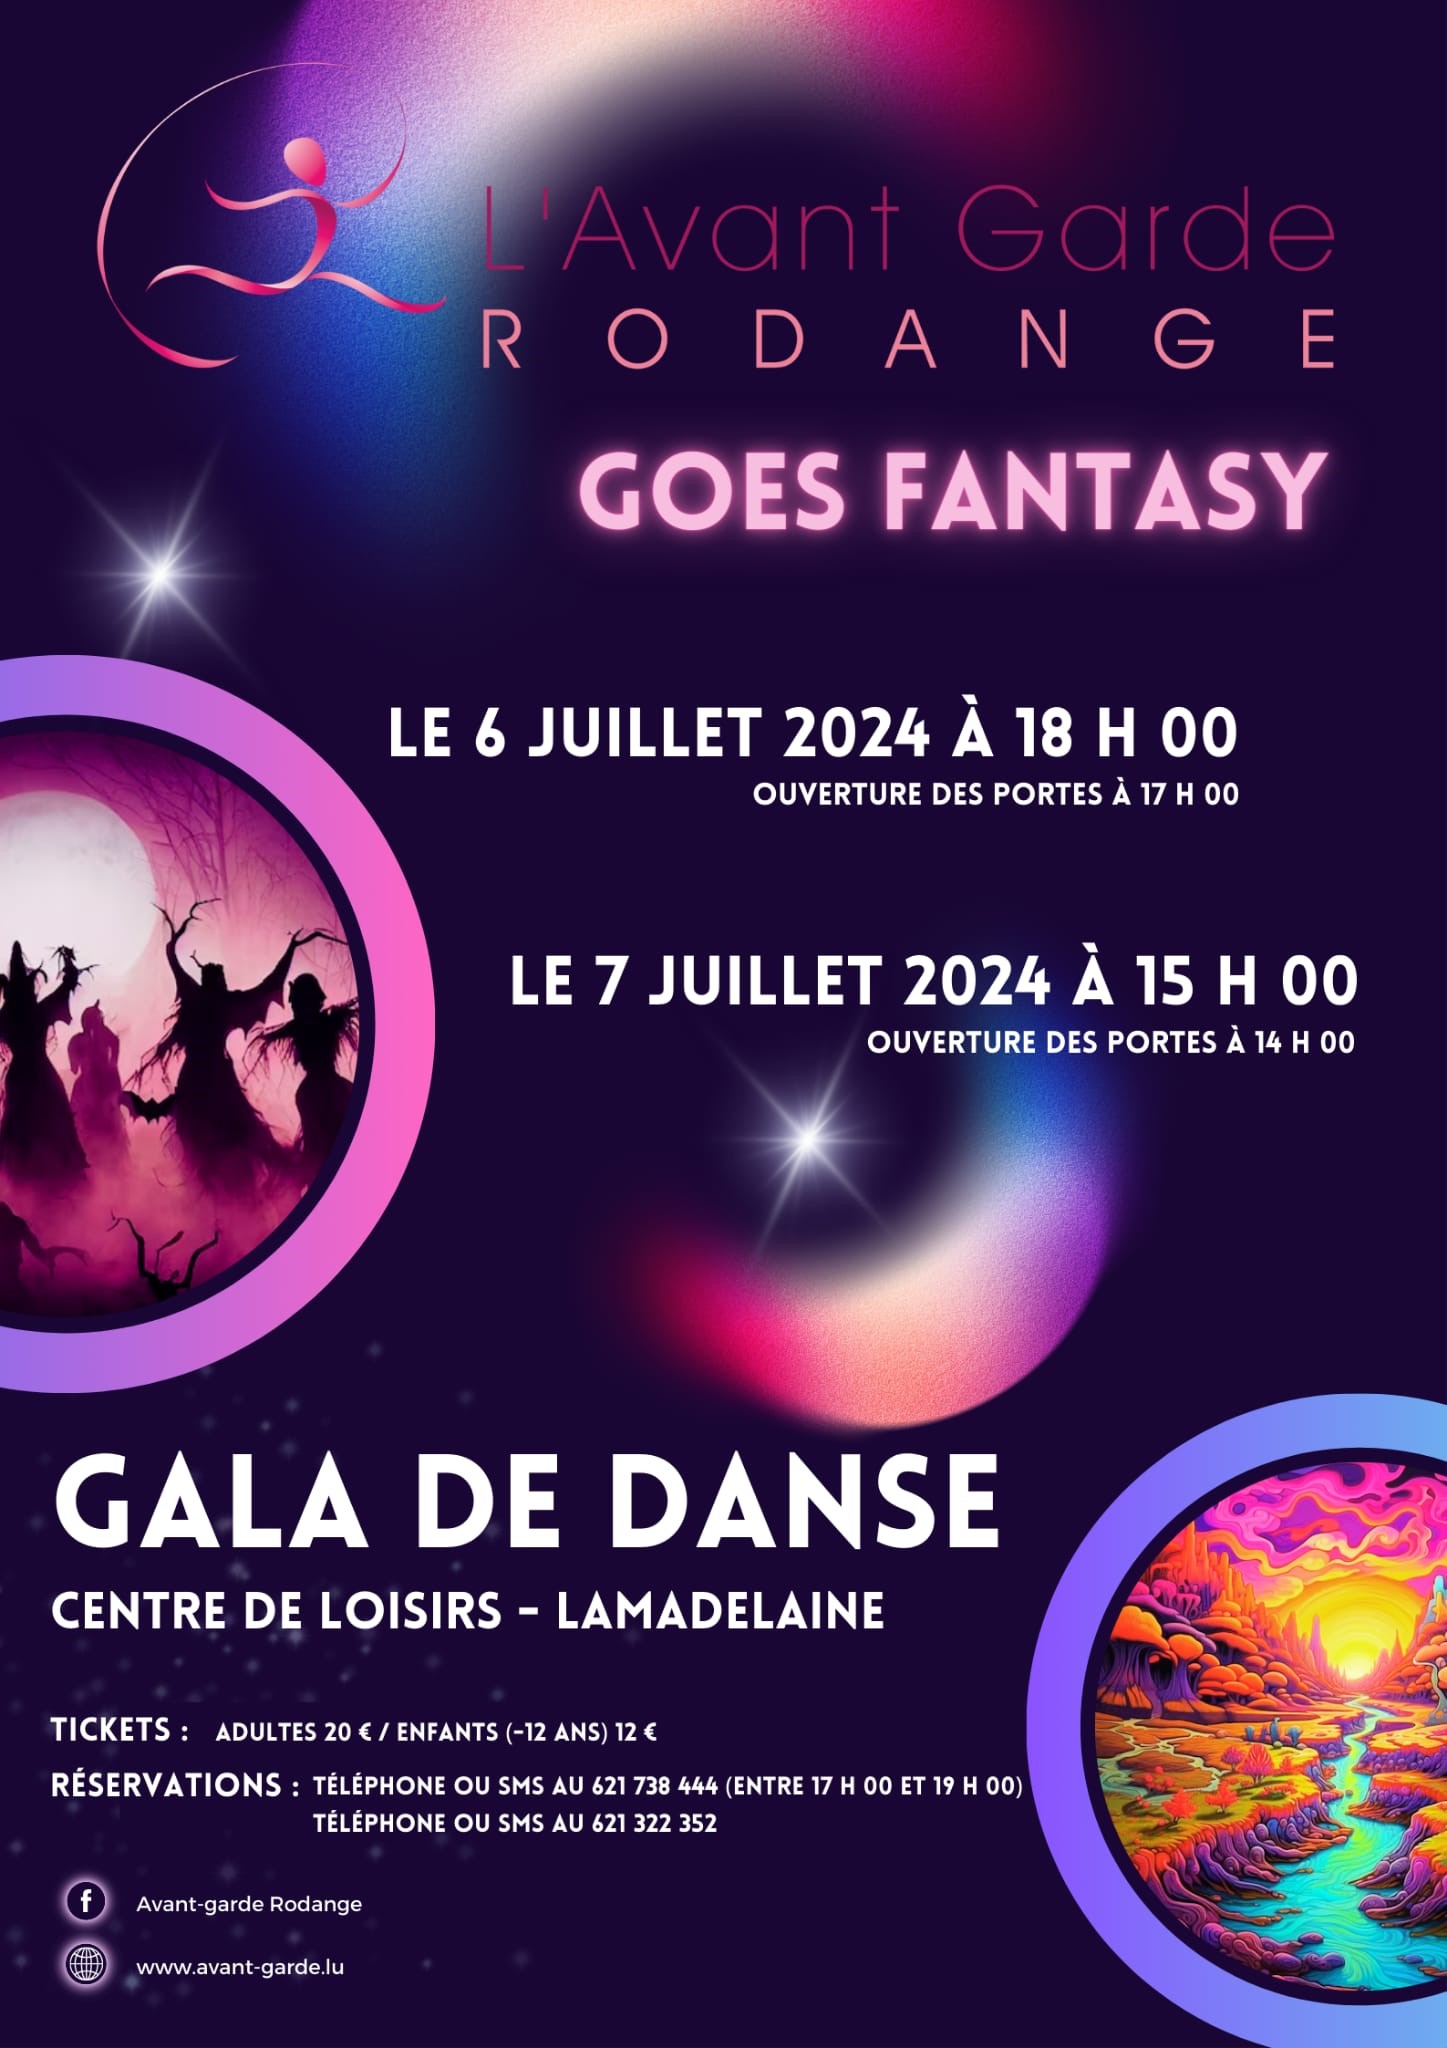 Dance Gala - L'Avant-Garde Rodange